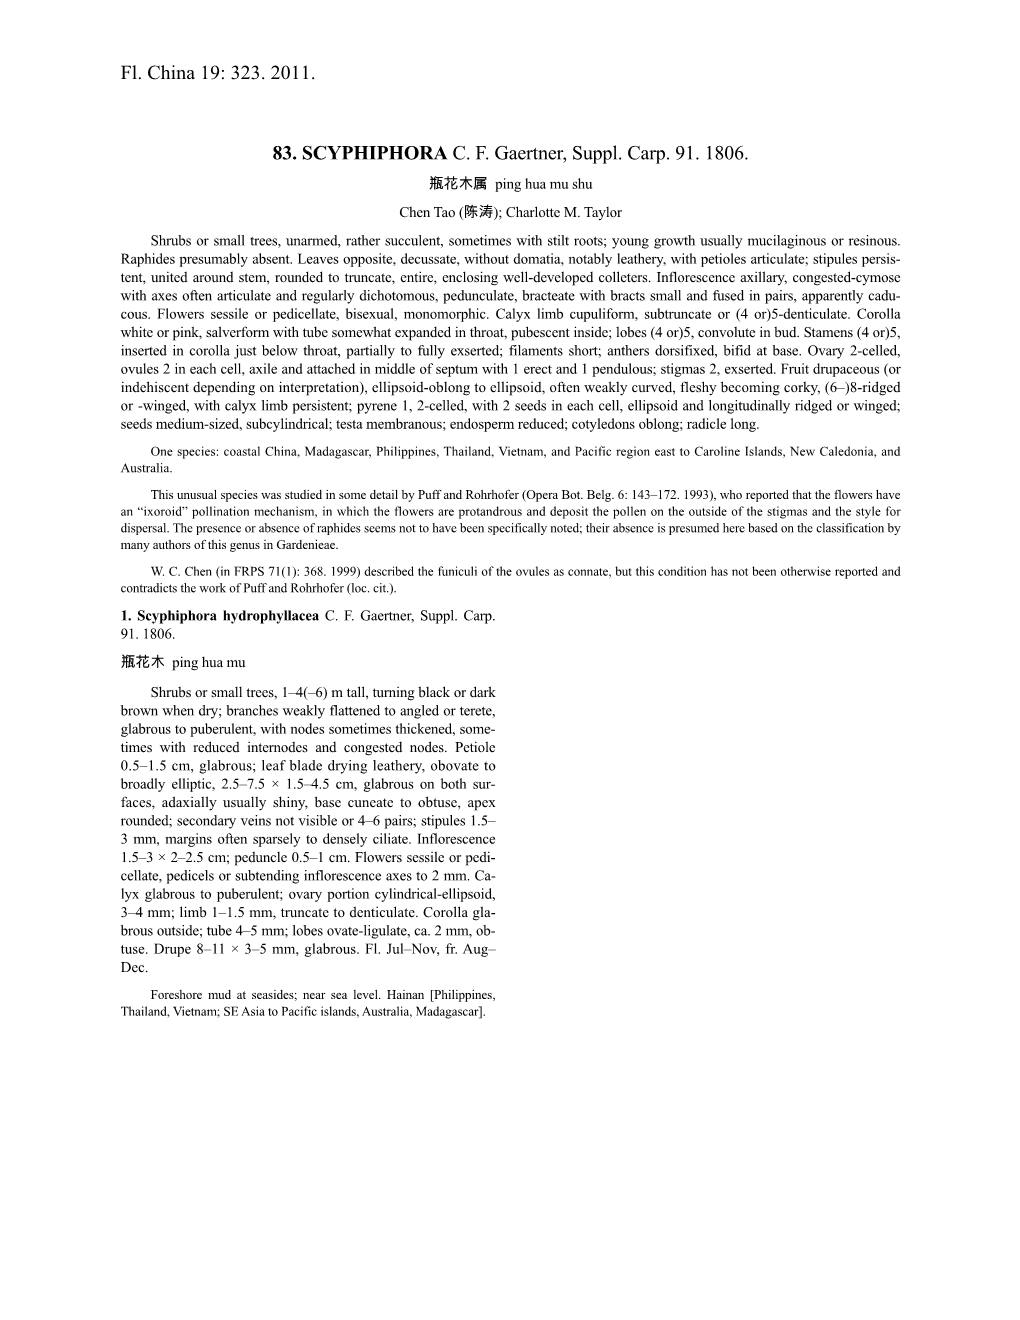 Scyphiphora (PDF)